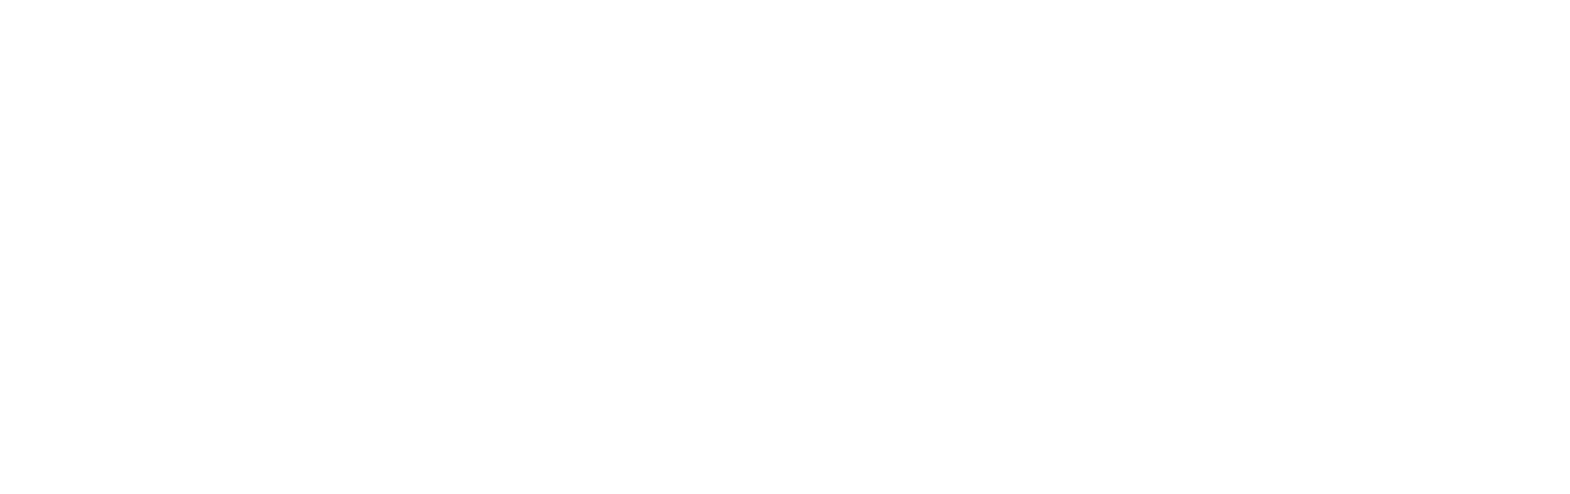 Center for Ethical Leadership in Media logo